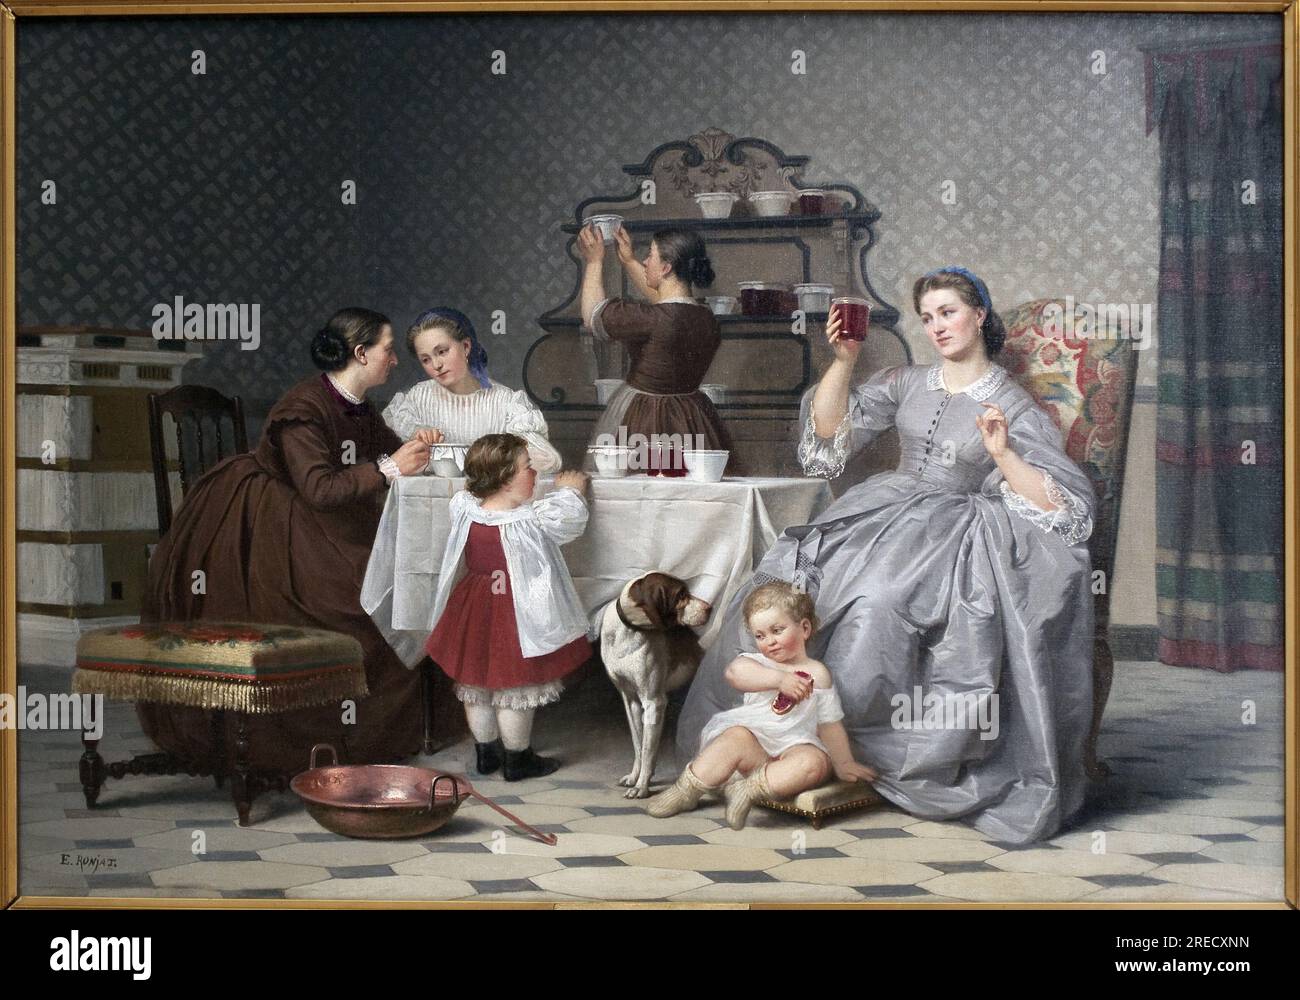 Les conitures, dit aussi Le Gouter de famille. Peinture de Eugene Ronjat (1822-1912), huile sur toile, vers 1860. Art francais 19e Siecle. Musée des Beaux Arts de Vienne (Isere). Stockfoto